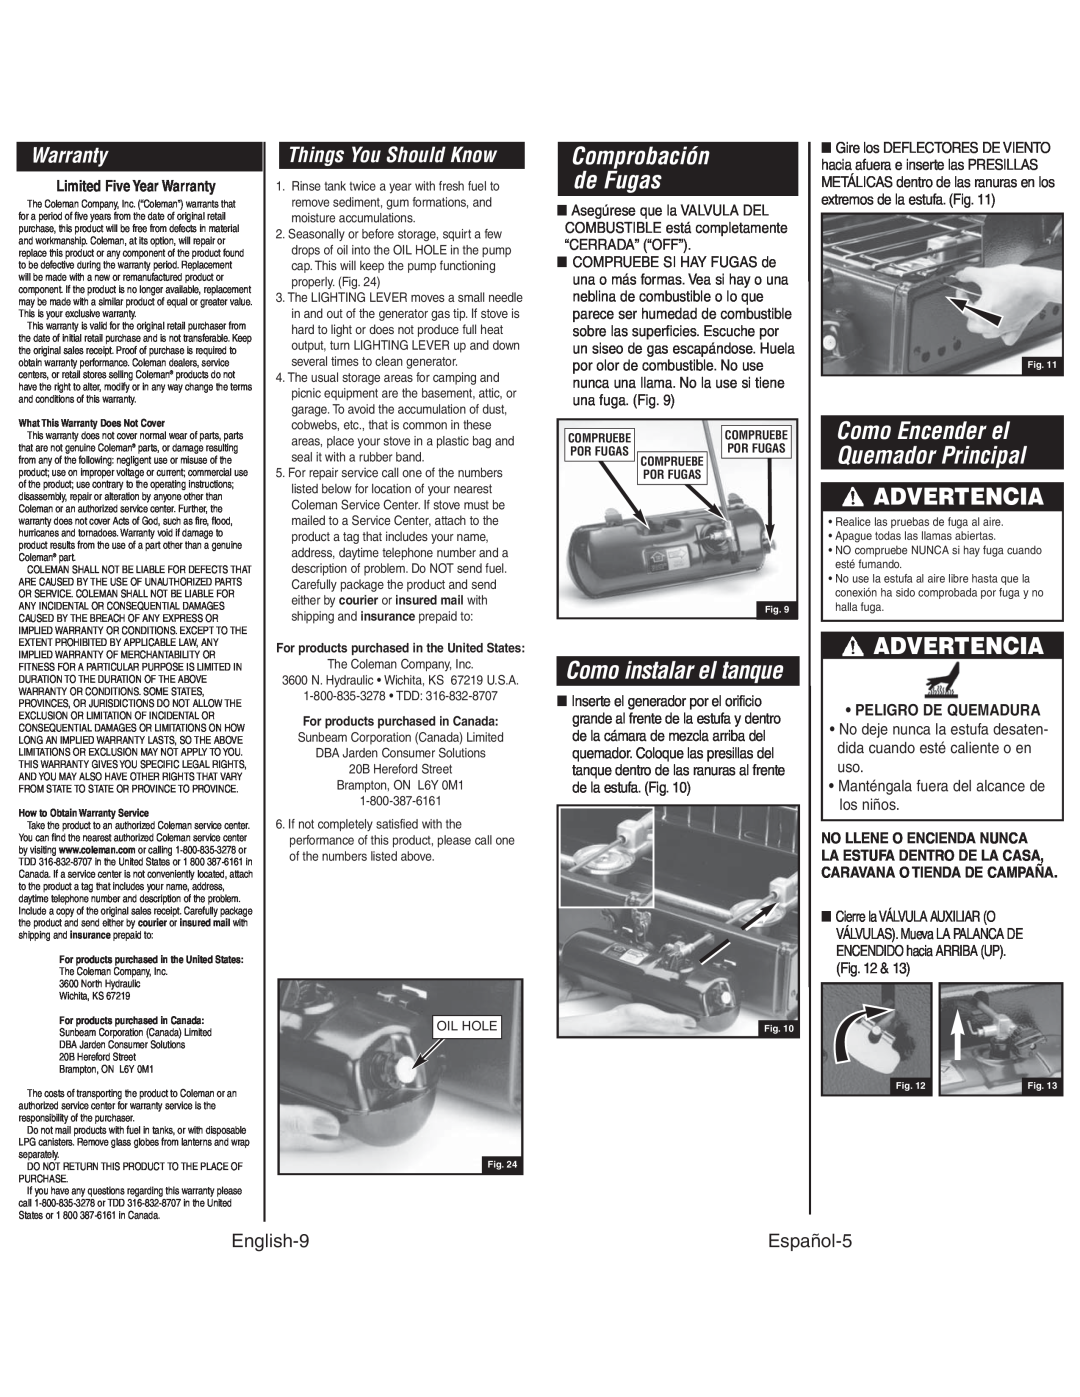 Coleman 425G Como instalar el tanque, Warranty, Things You Should Know, Comprobación de Fugas, English-9, Español-5 